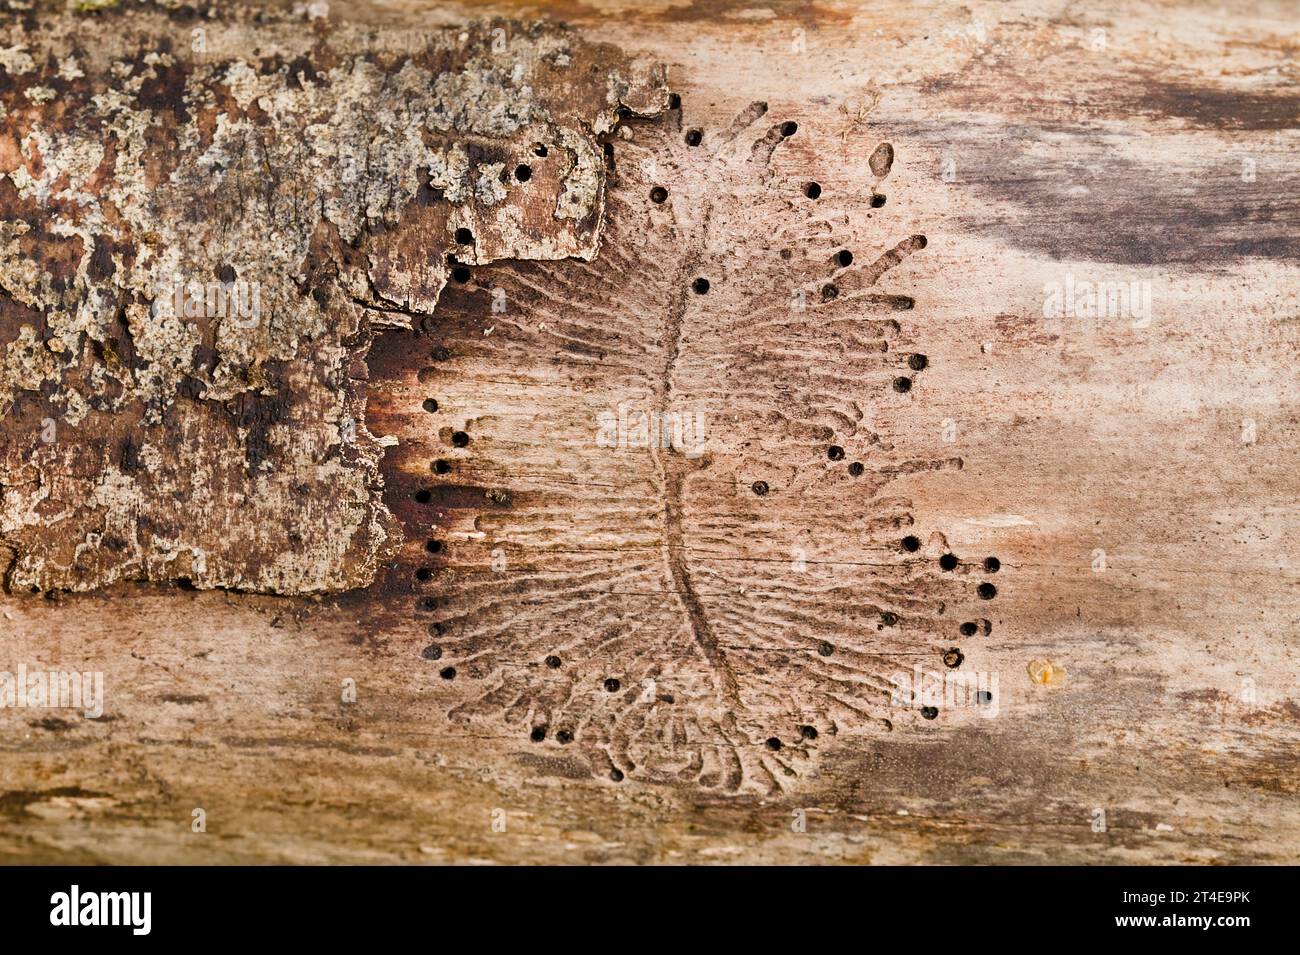 Marques, trous et tunnels réalisés par Bark Beetles, IPS Engraver Beetles sur Un morceau de bois mort, Blashford Lakes, New Forest UK Banque D'Images